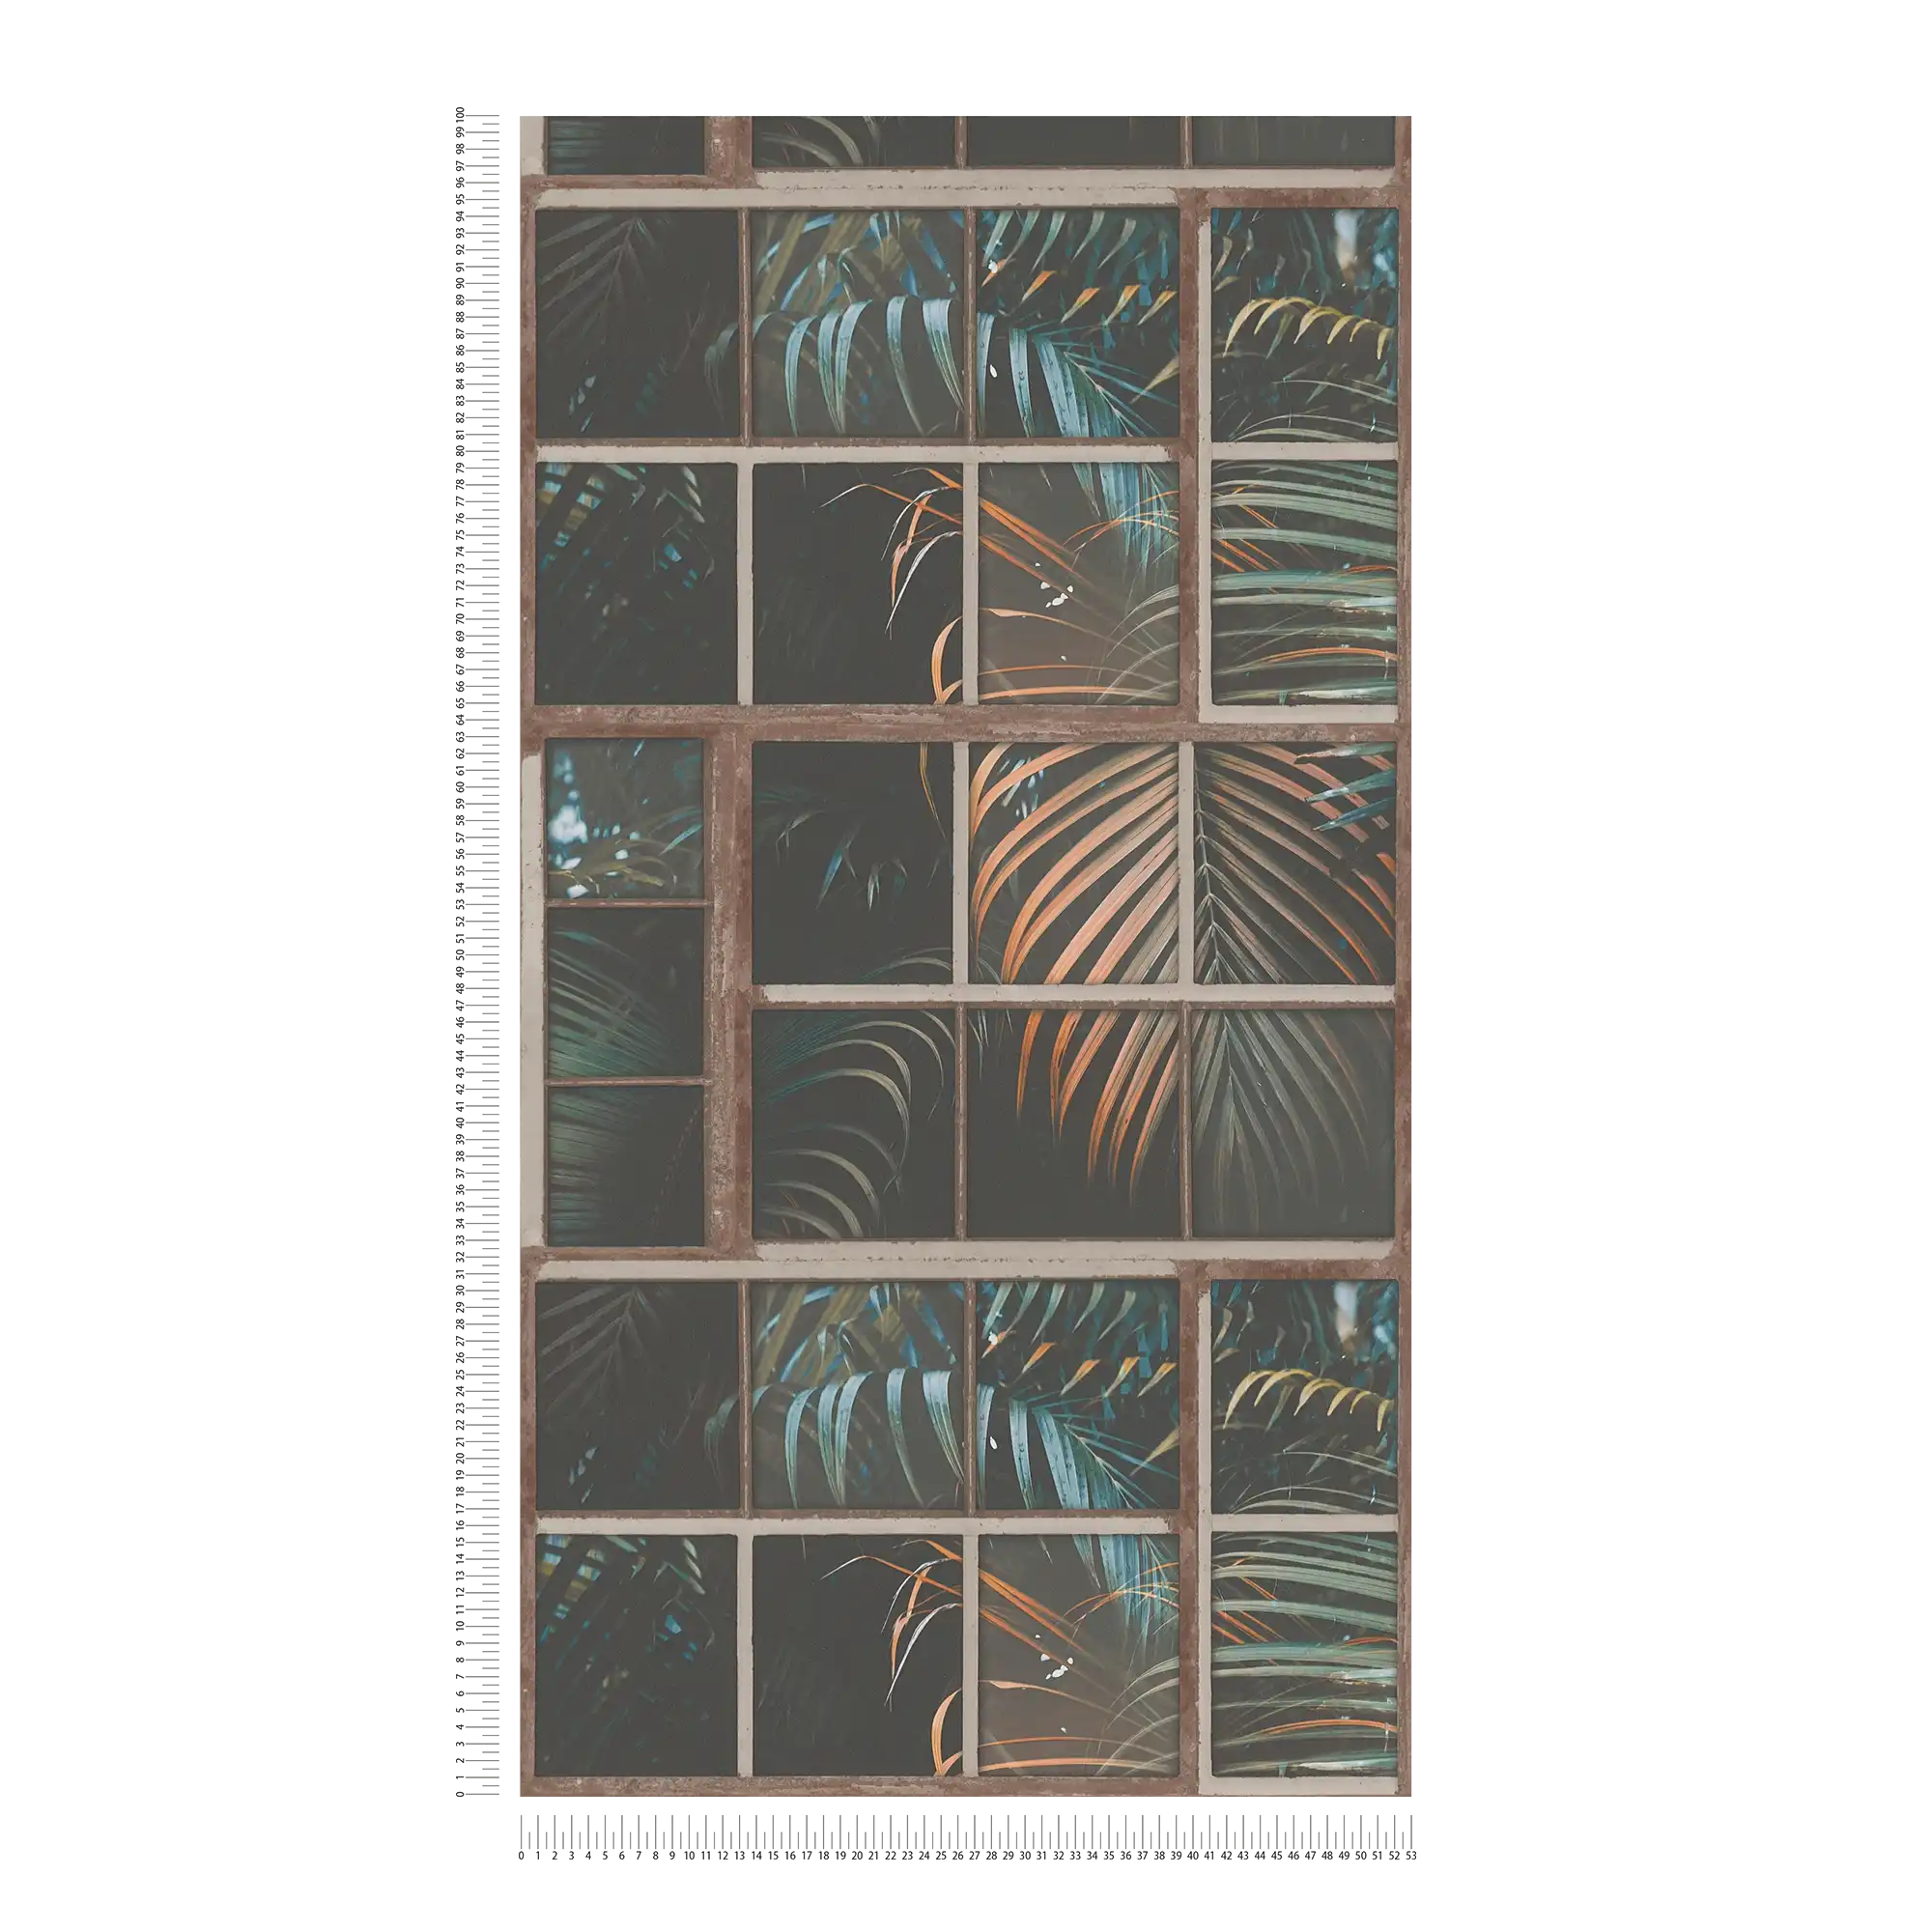             Papier peint intissé Fenêtre industrielle & vue sur la jungle - marron, pétrole, noir
        